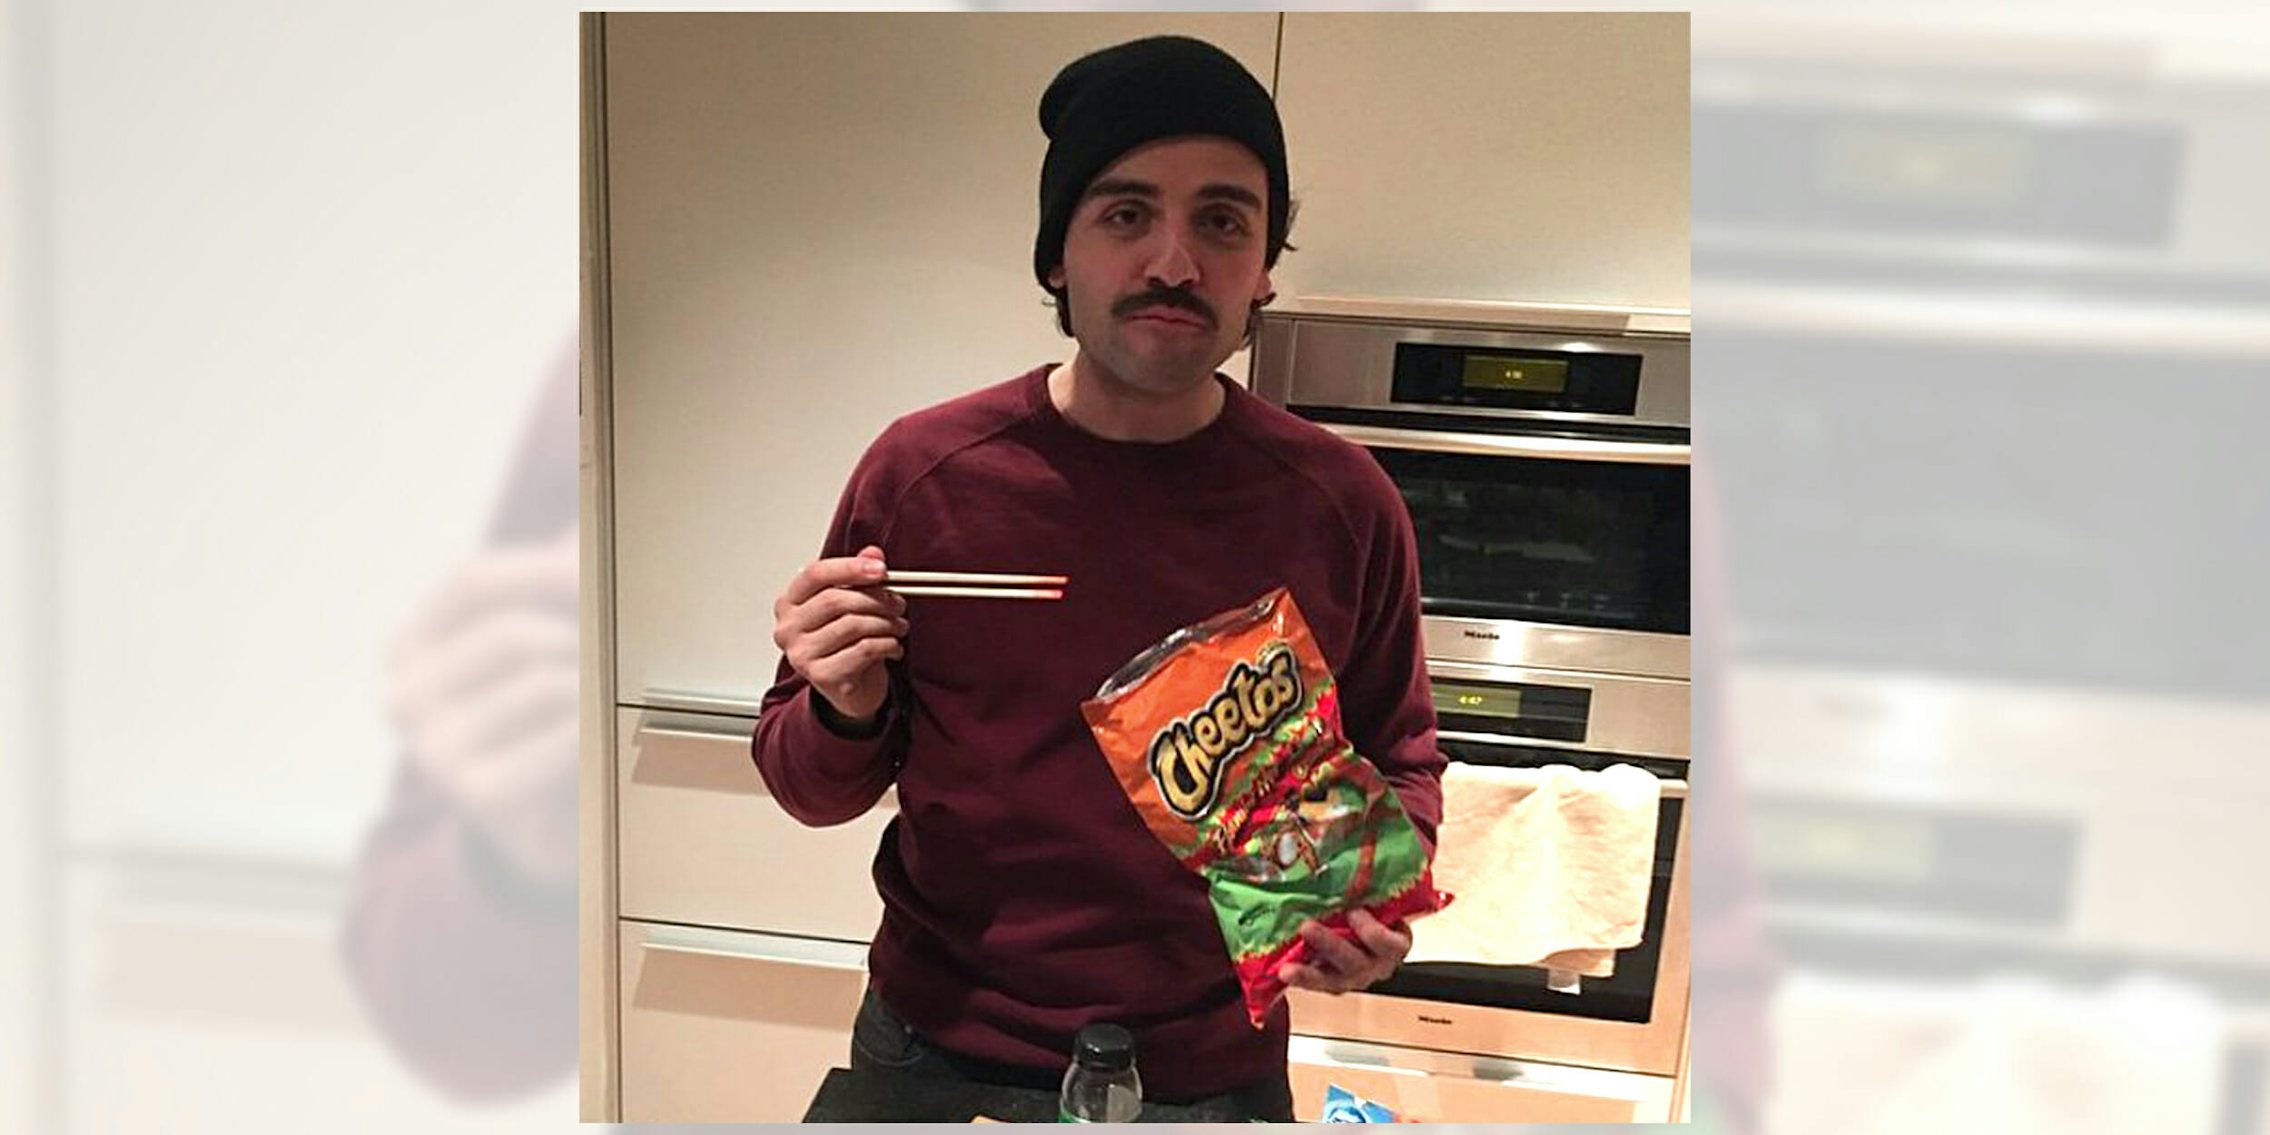 Oscar Isaac eating Cheetos with chopsticks